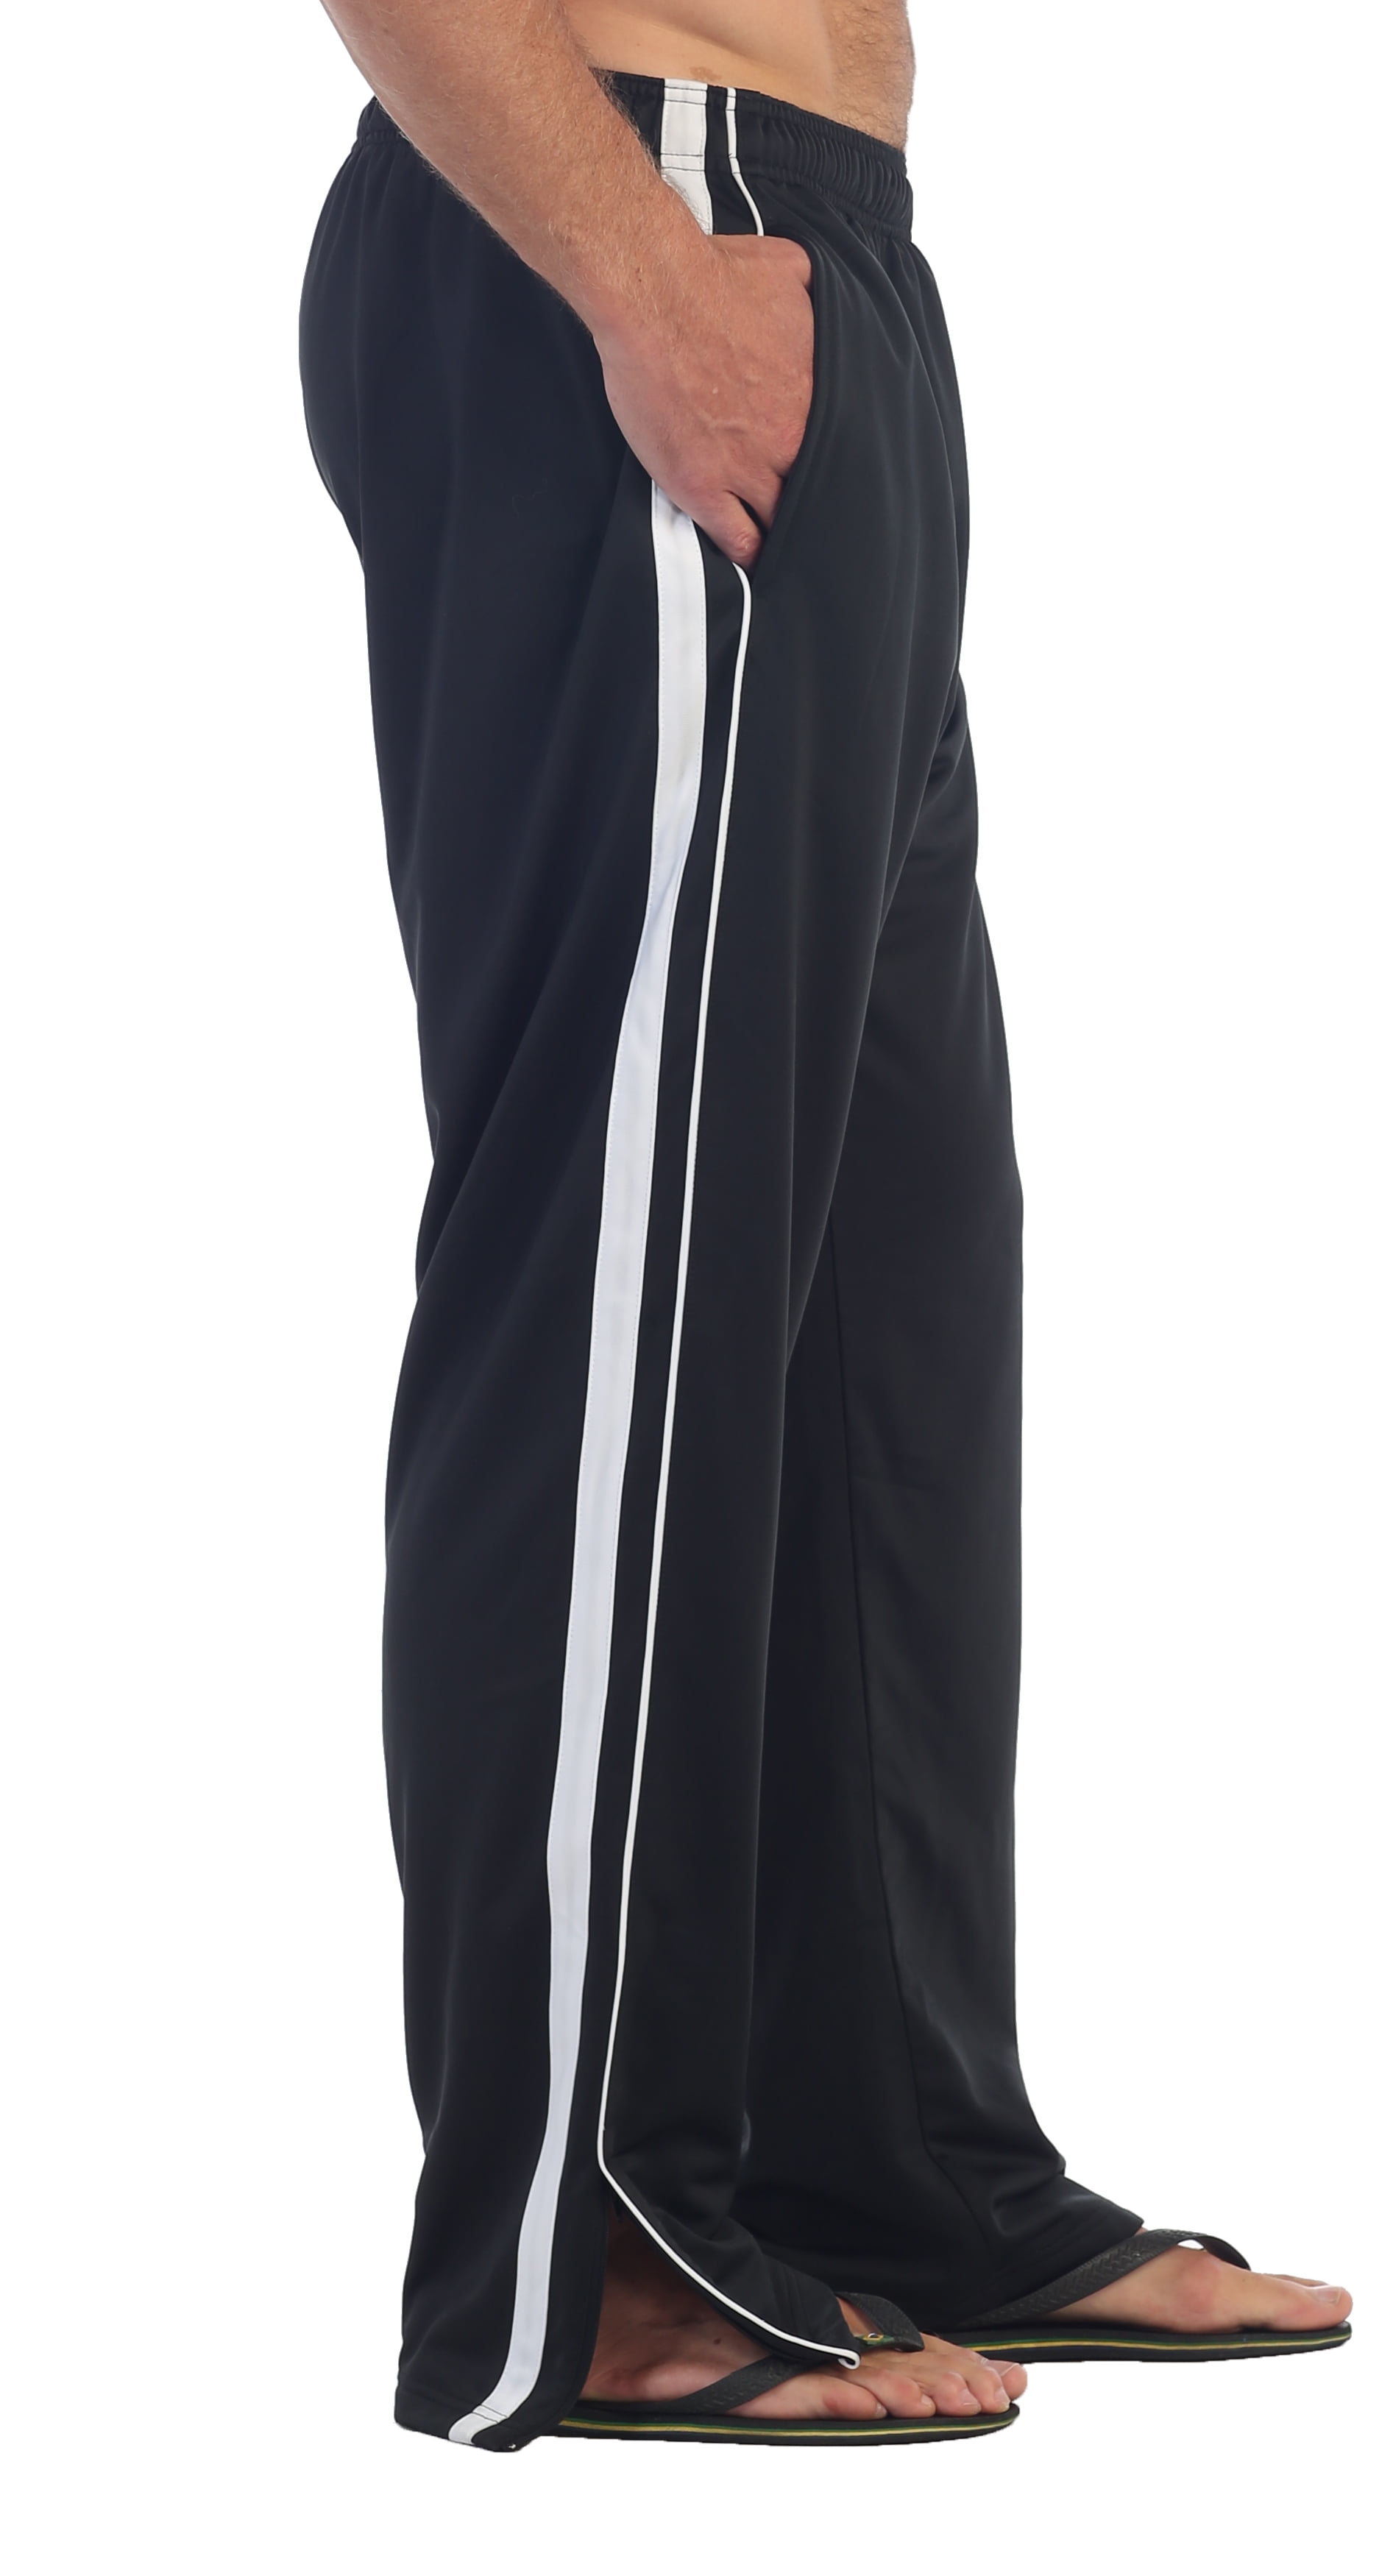 Details about  / Treck Pants Jogging Trouser Black Line Points Athletics Bottoms Polyester Warm